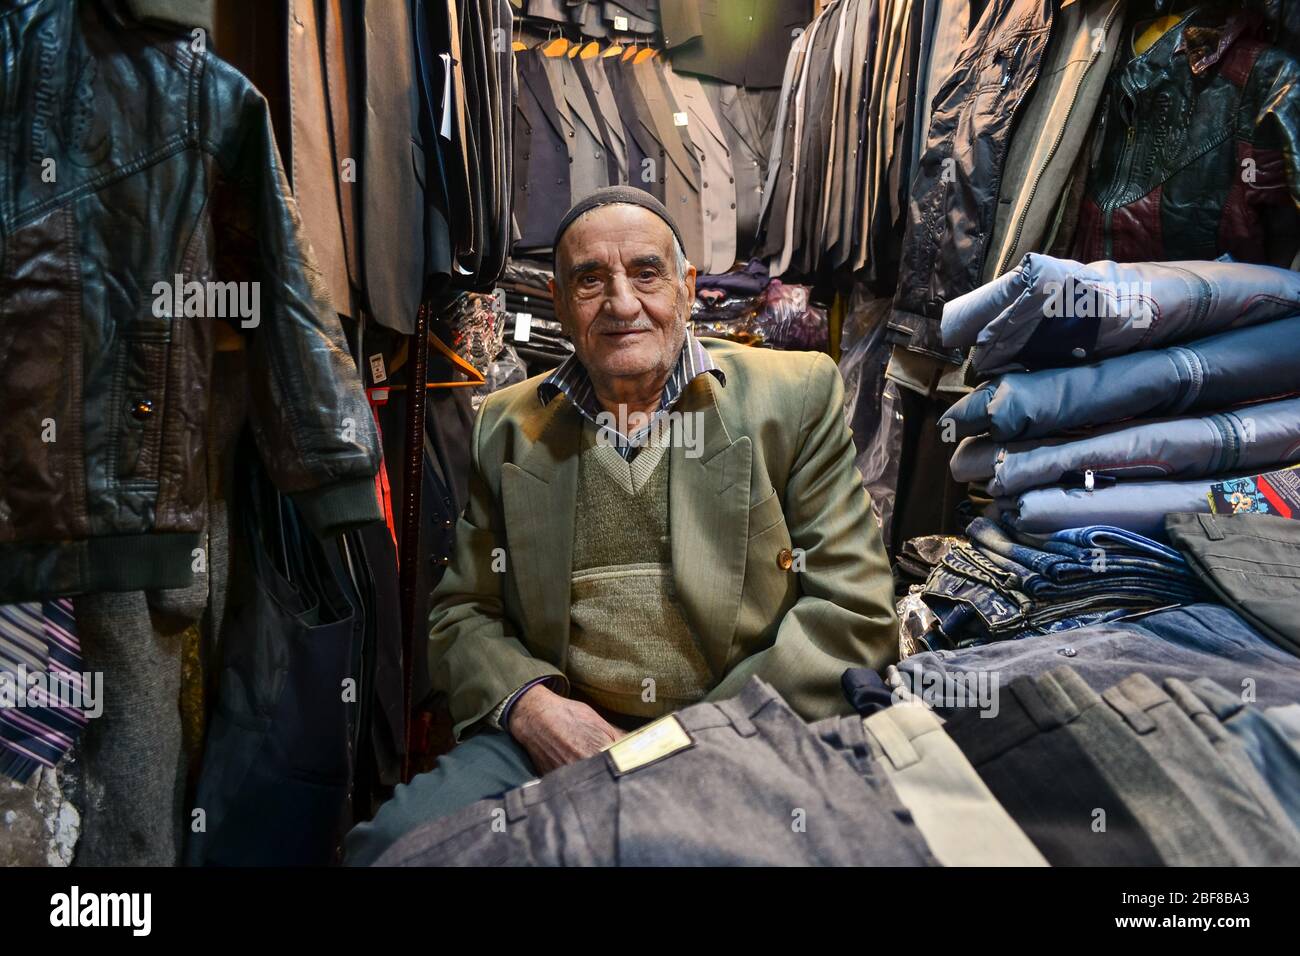 Tabriz, Iran - 22. November 2013: Iranischer Geschäftsmann verkauft Kleidung in einem kleinen überfüllten Laden im Bazar von Tabriz, einem alten Basar, der zum UNESCO-Weltkulturerbe gehört Stockfoto